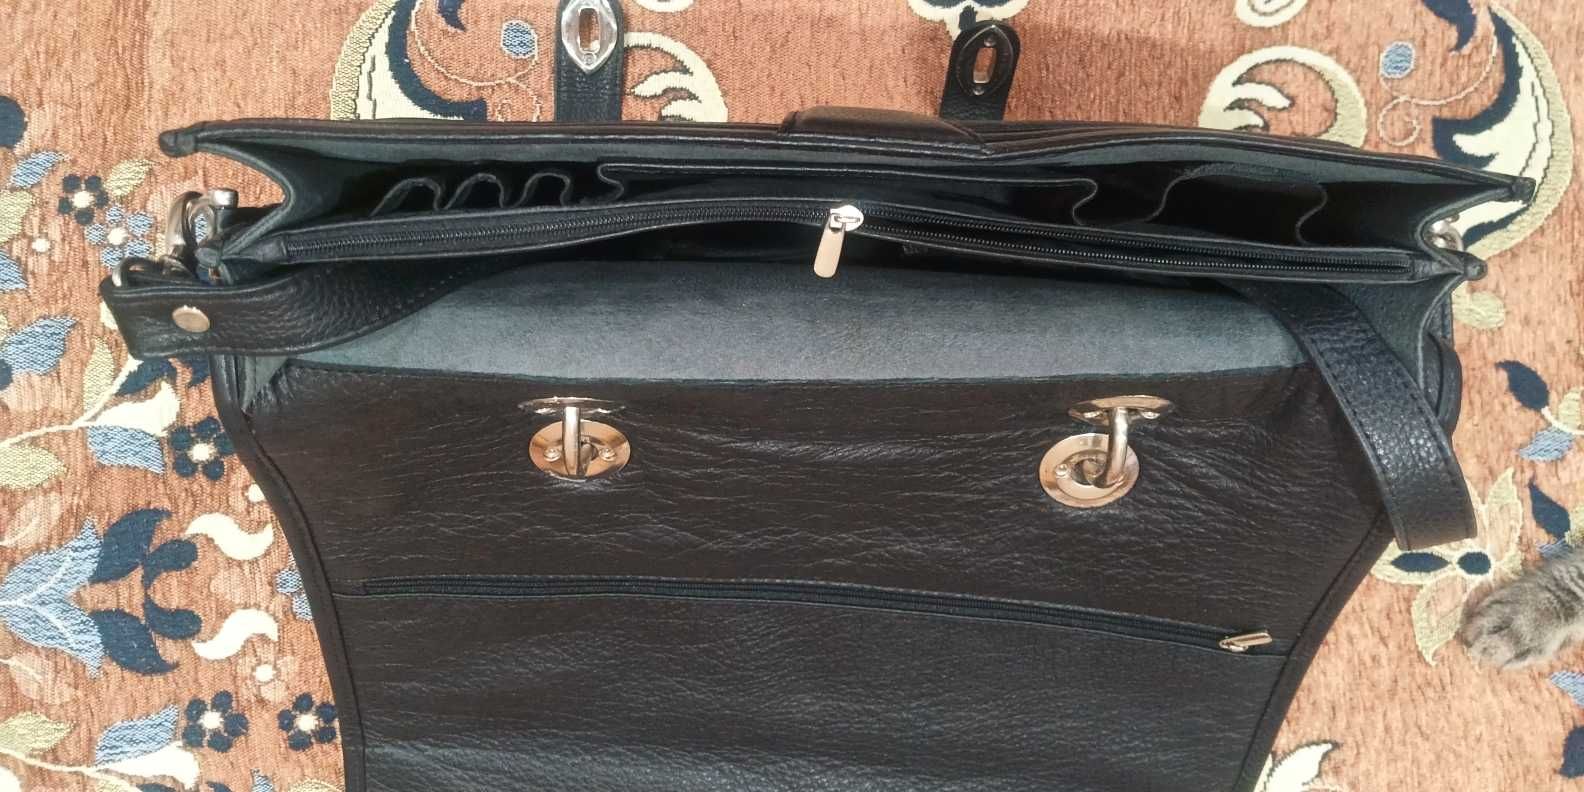 Мужской кожаный портфель, 37х30 см, черный, кожа, Турция, новый.